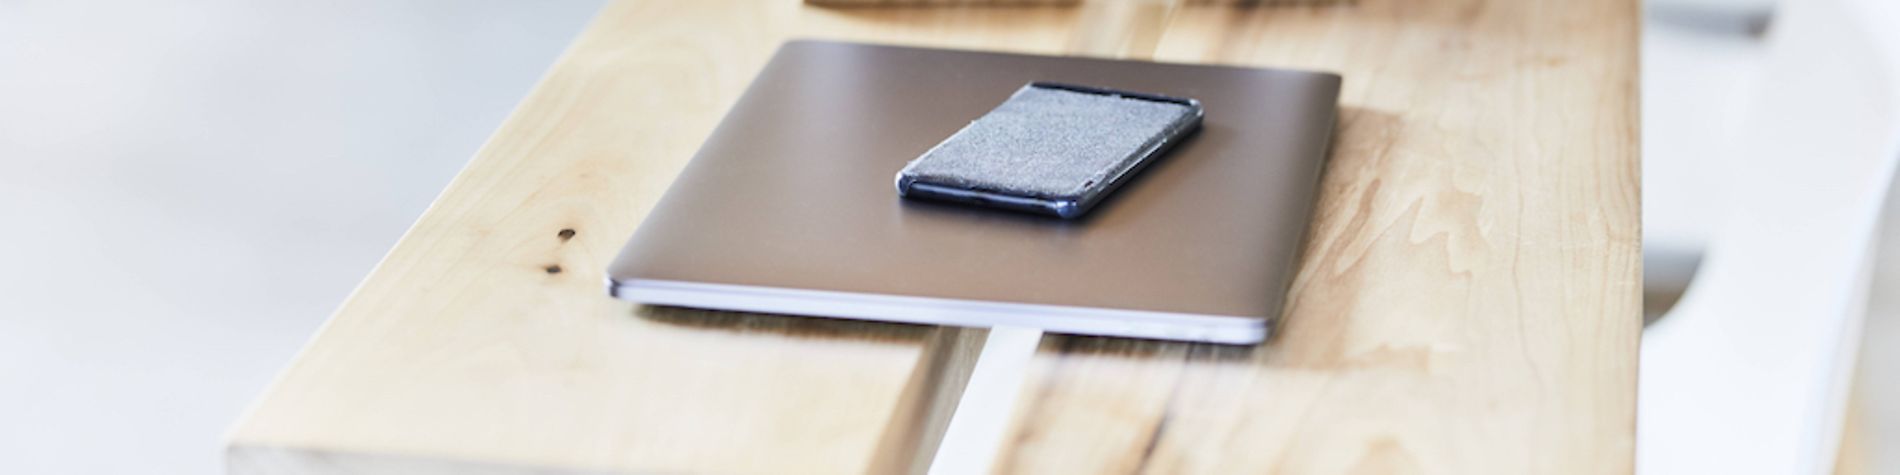 Tablet, Smartphone und Laptop liegen auf einem Tisch.